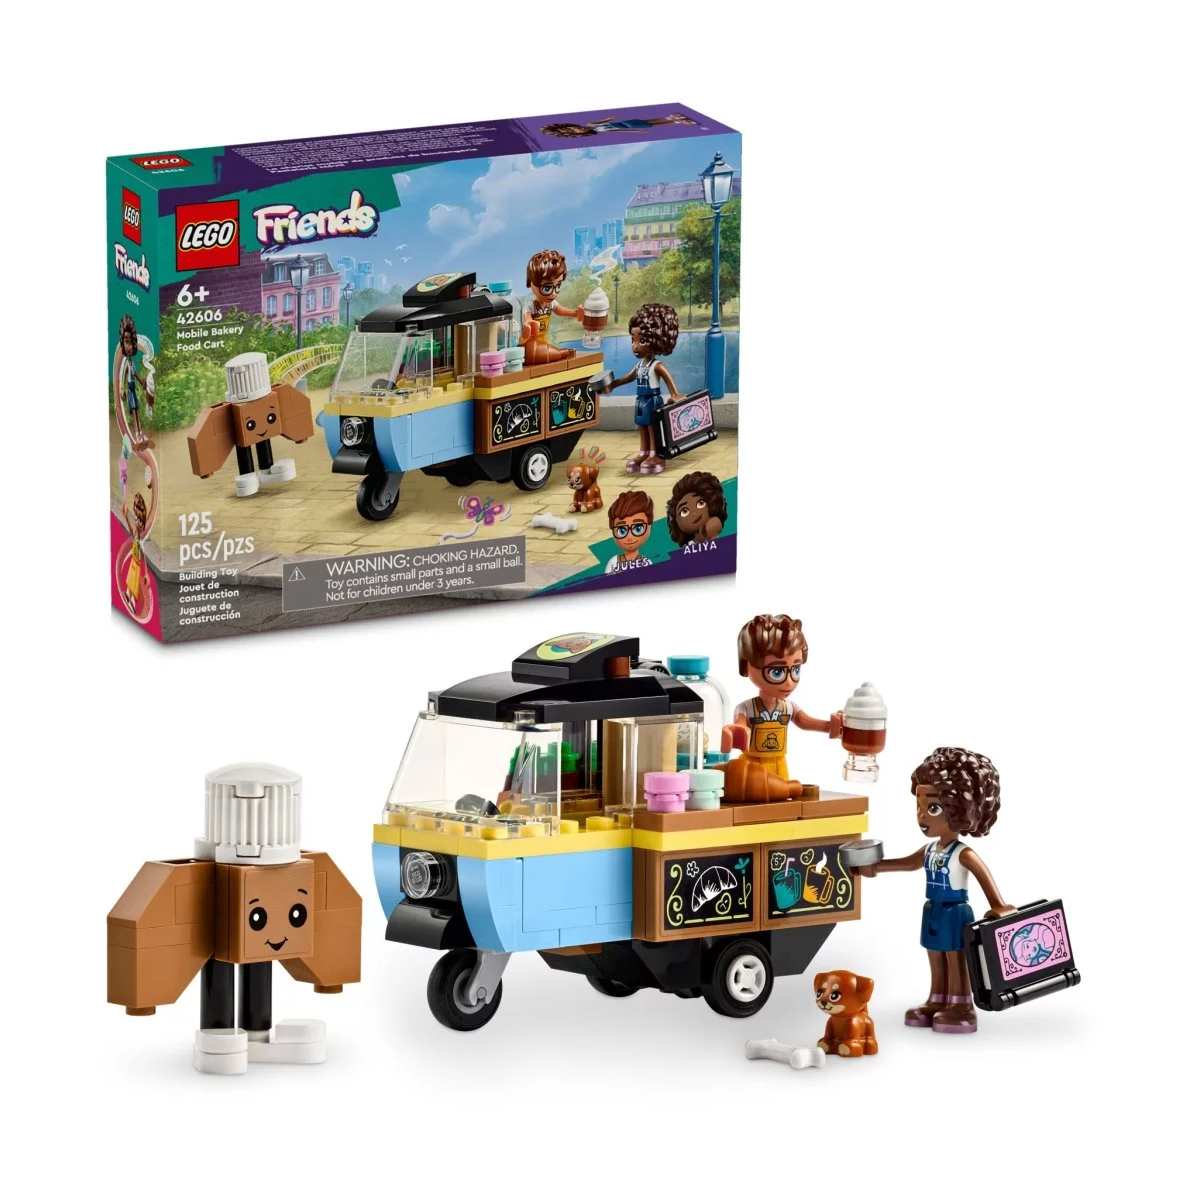 ролевые игры kid s concept игрушечный набор для выпечки Конструктор Lego Friends Mobile Bakery Food Cart 42606, 125 деталей